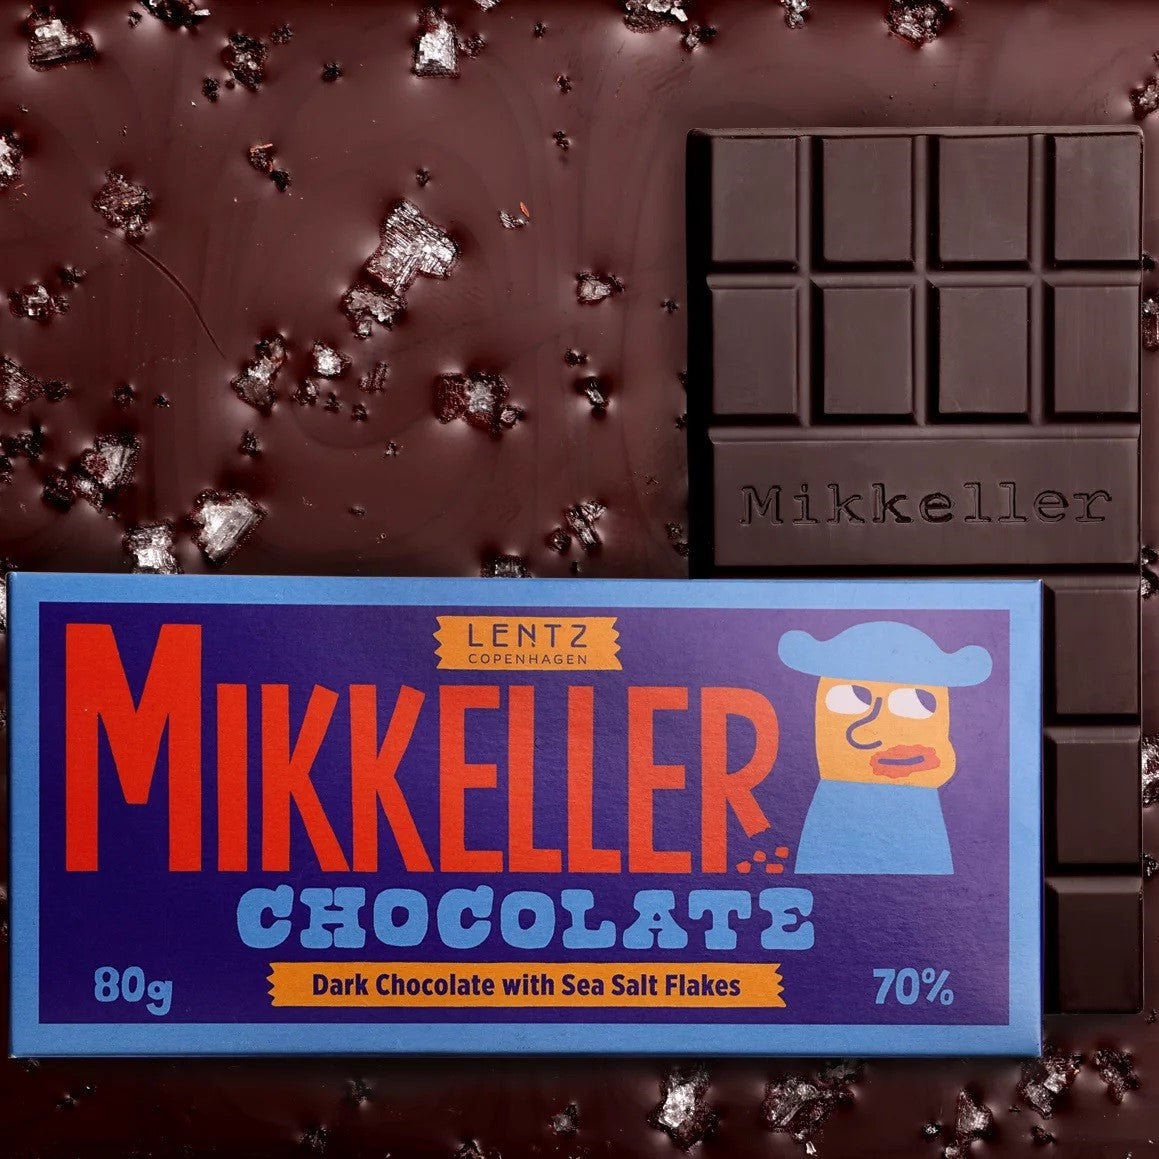 Mikkeller - Dark Chocolate with Sea Salt Flakes 70%